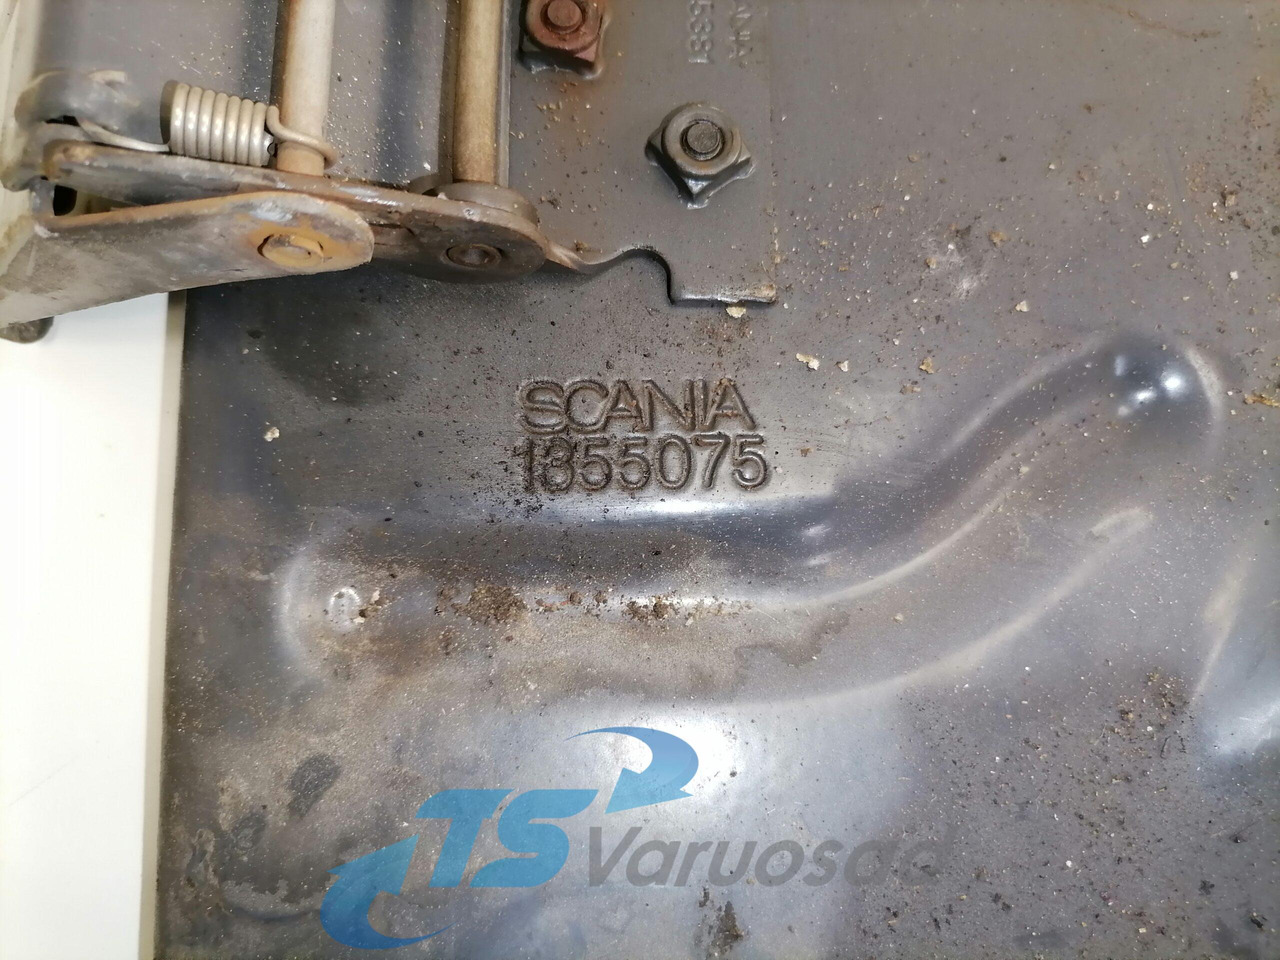 Универсальная запчасть для Грузовиков Scania Mudguard bracket 1355075: фото 4